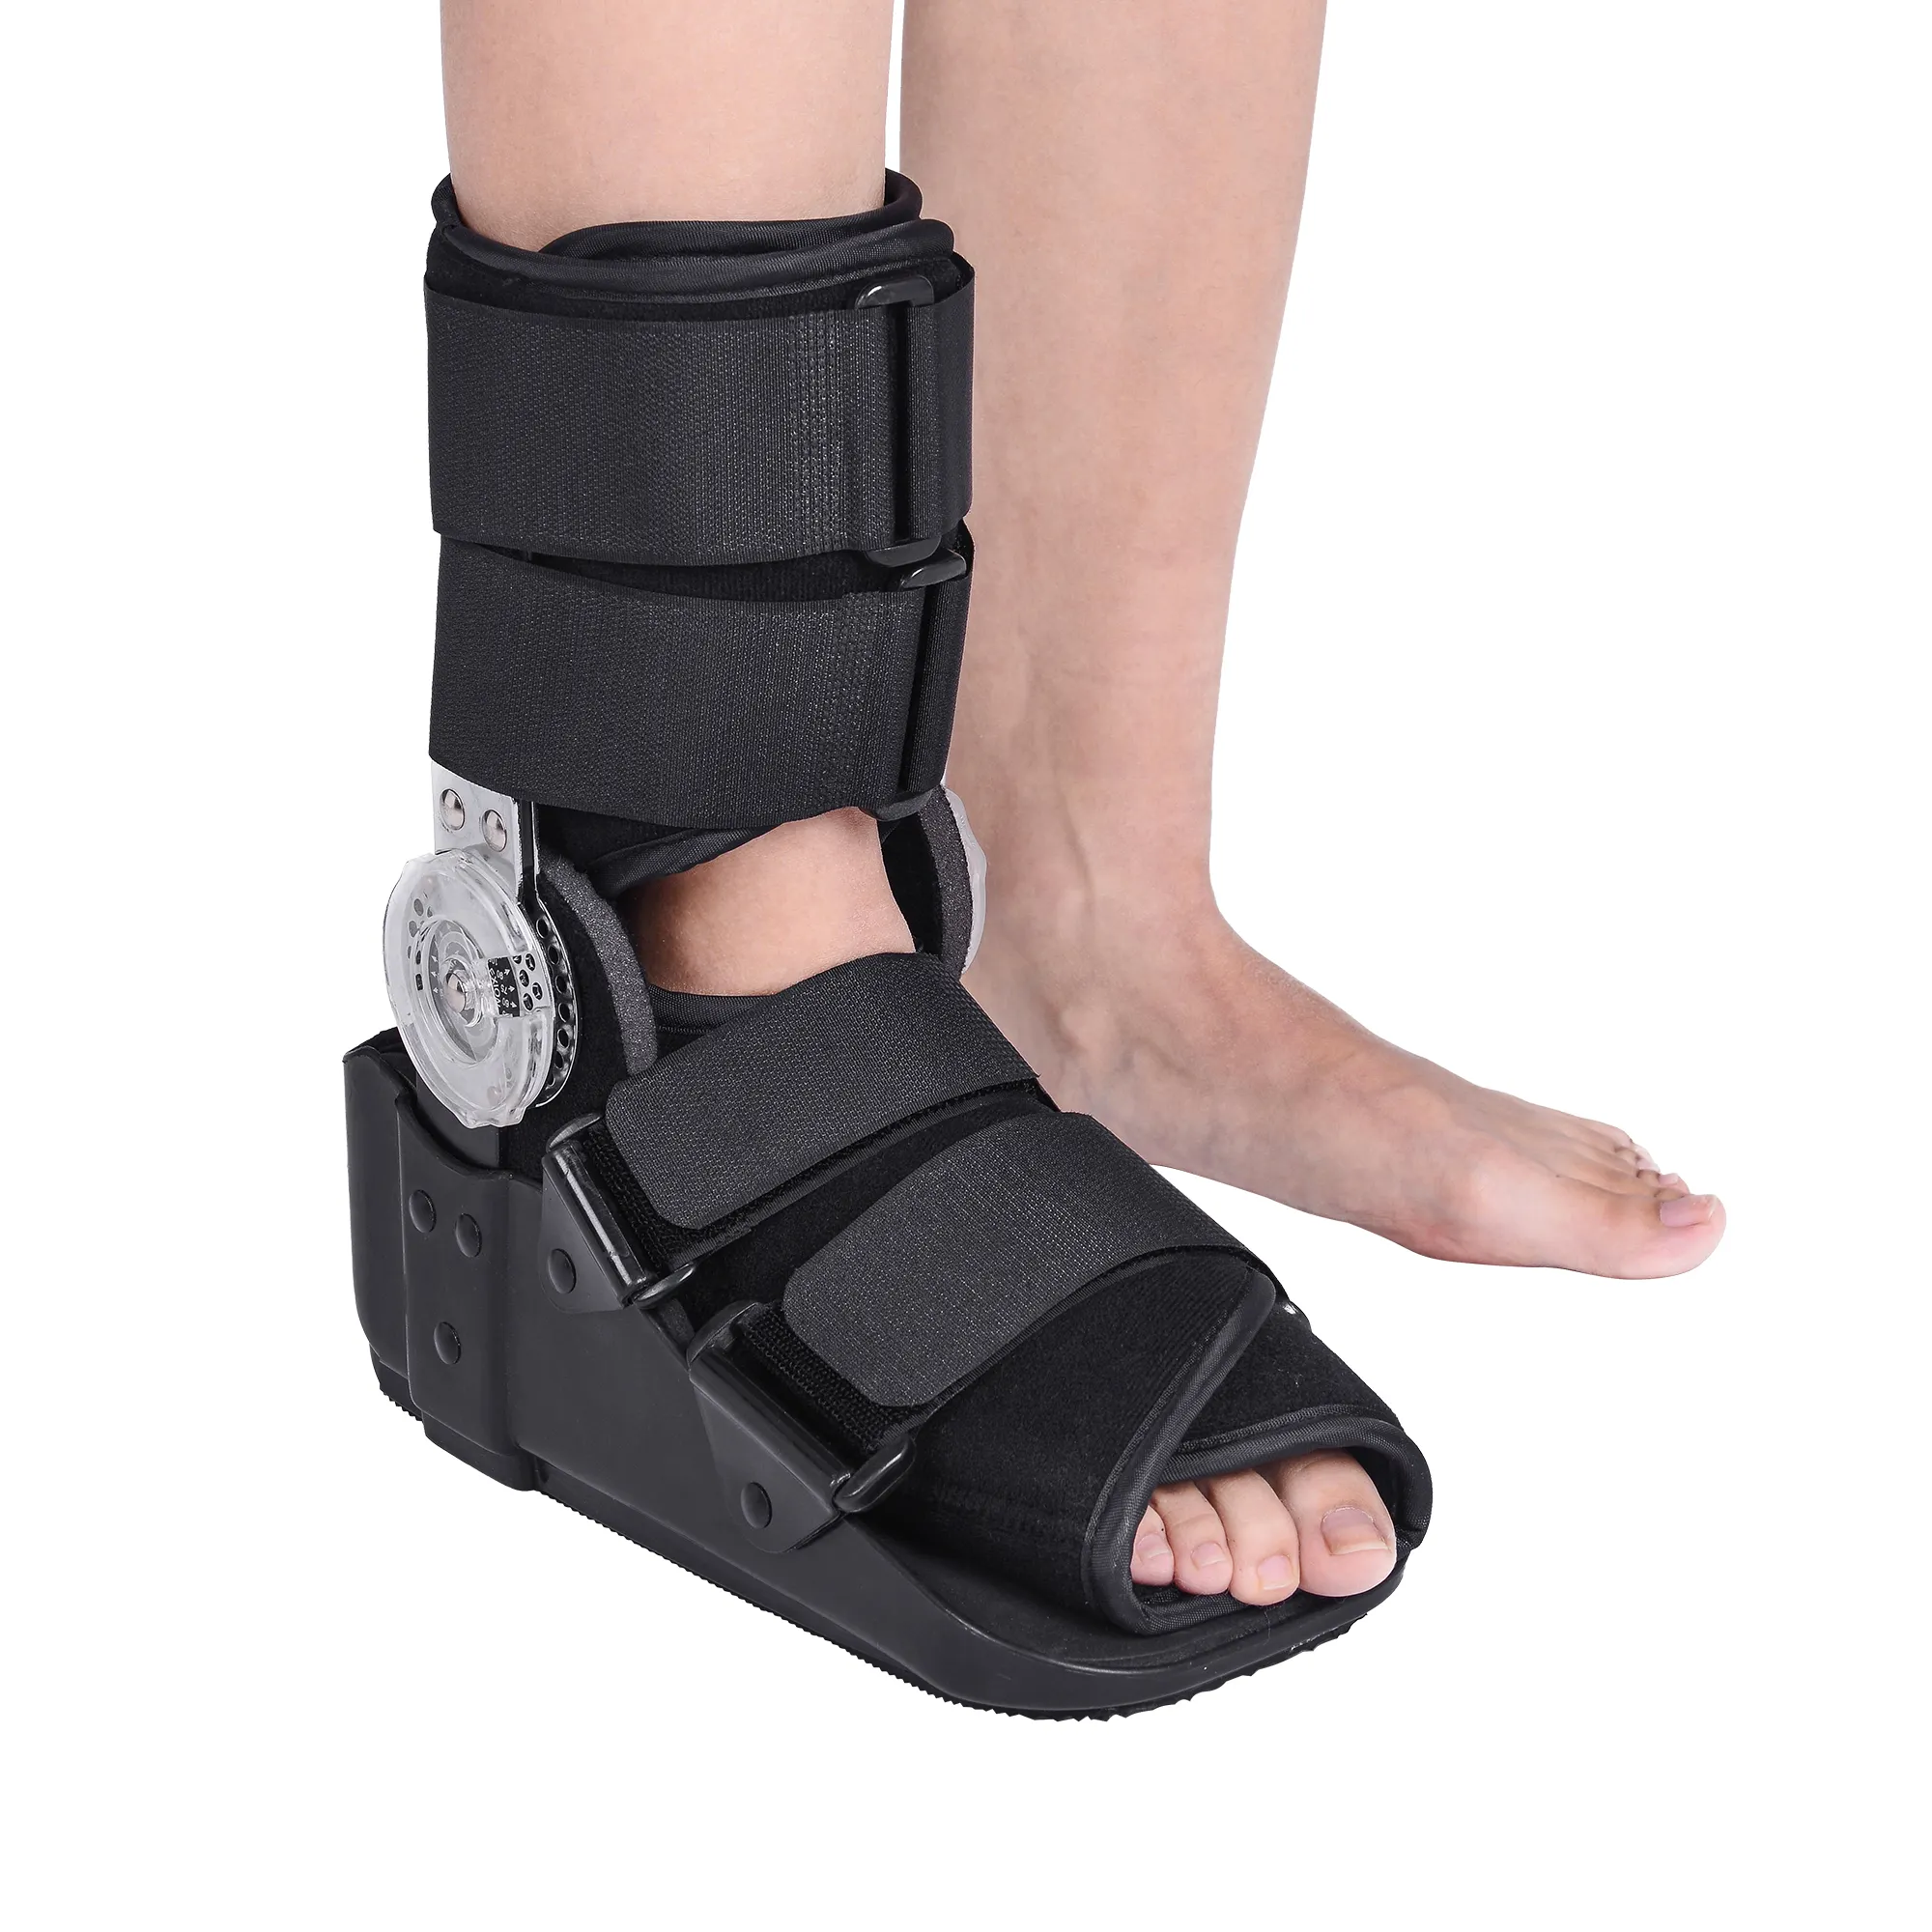 بدلة مشي كاميرا طبية لتقويم العظام بدلة دعم للكاحل والقدم بدلة دعم للكسر بدلة مشي ROM لصحة القدم